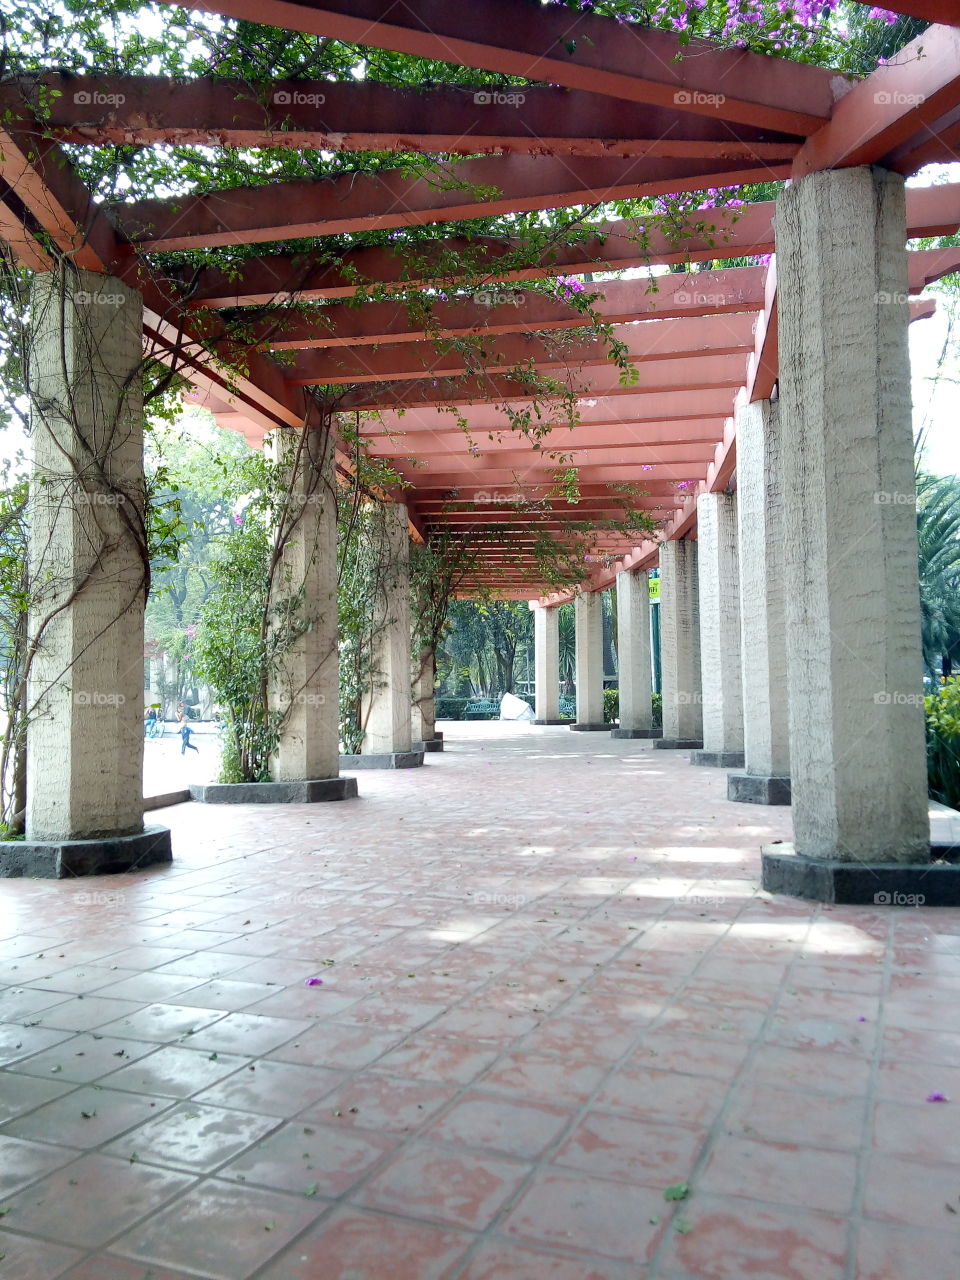 camino con pilares y arcos adornados por plantas de enredadera, ubicado en un parque... el techo es tipo pilares color anaranjado.